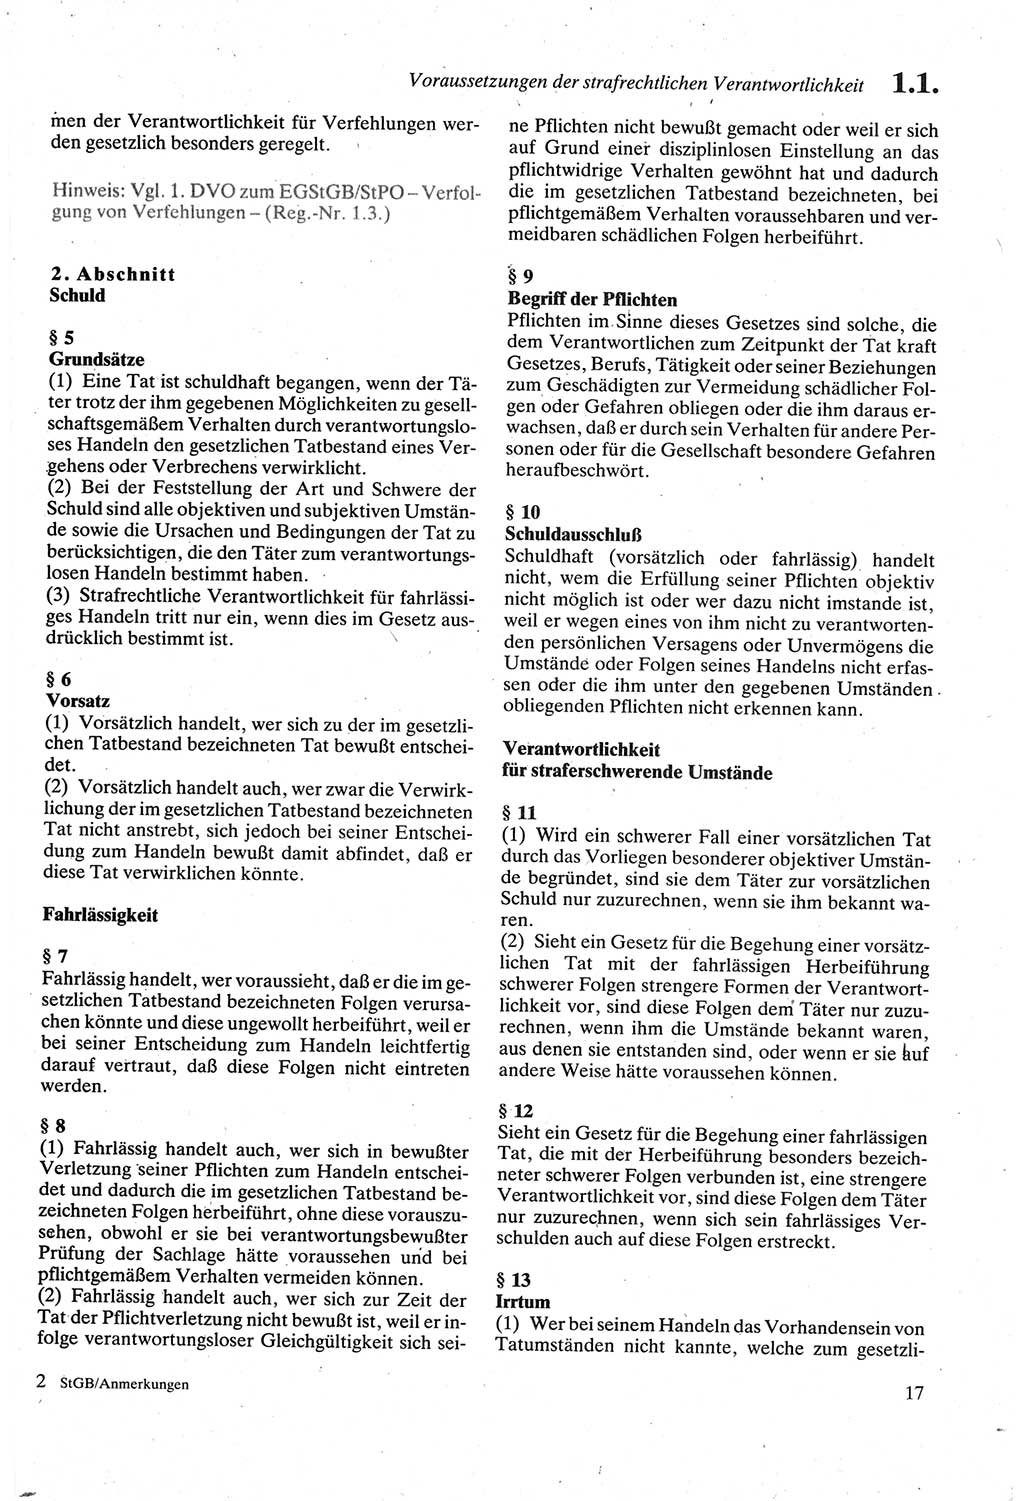 Strafgesetzbuch (StGB) der Deutschen Demokratischen Republik (DDR) sowie angrenzende Gesetze und Bestimmungen 1979, Seite 17 (StGB DDR Ges. Best. 1979, S. 17)